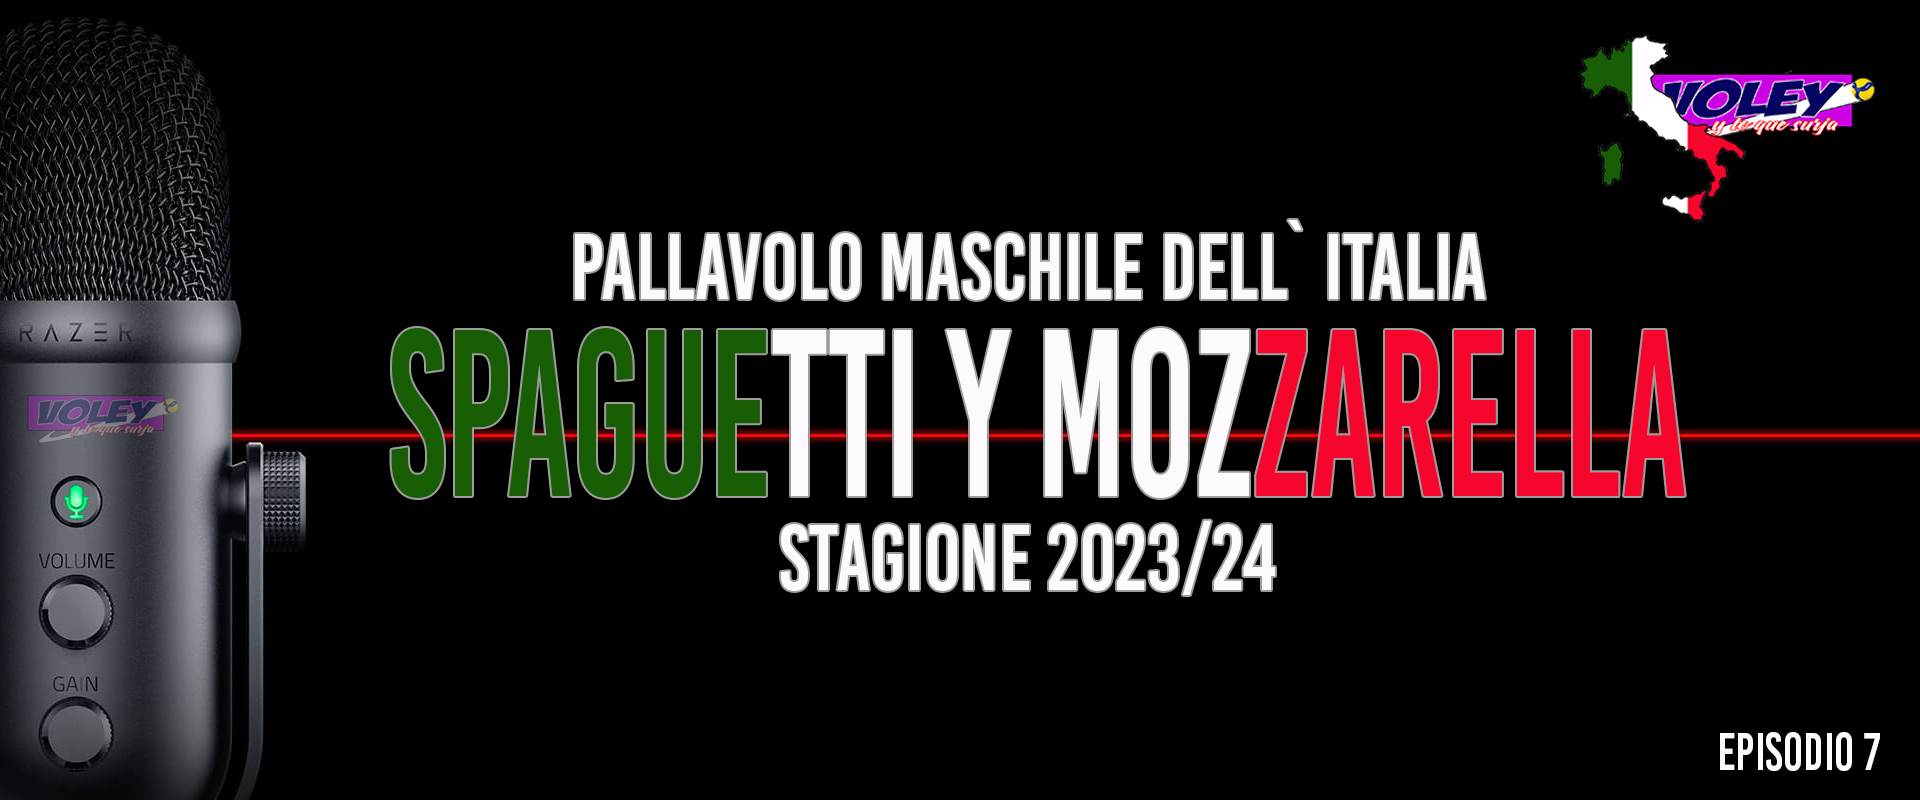 Quiero Spaguetti y Mozzarella. Episodio 7. L’Itas Trentino è inarrestabile (J8)